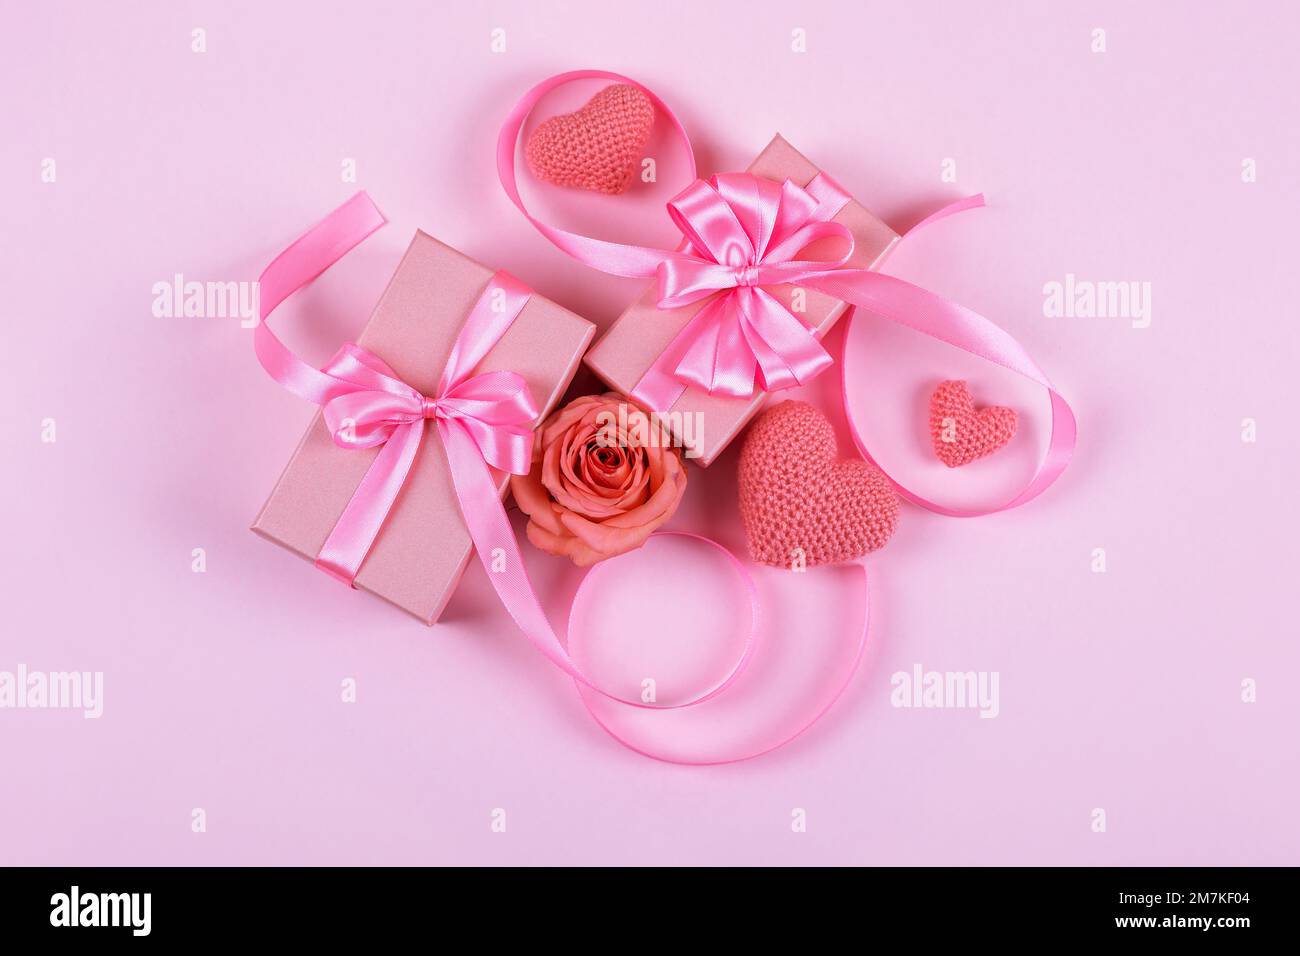 Grußkarte zum Valentinstag, Muttertag und Geburtstag. Pinke Rosen, gestrickte pinke Herzen, Geschenkbox mit Satinschleife auf pinkfarbenem Hintergrund Stockfoto